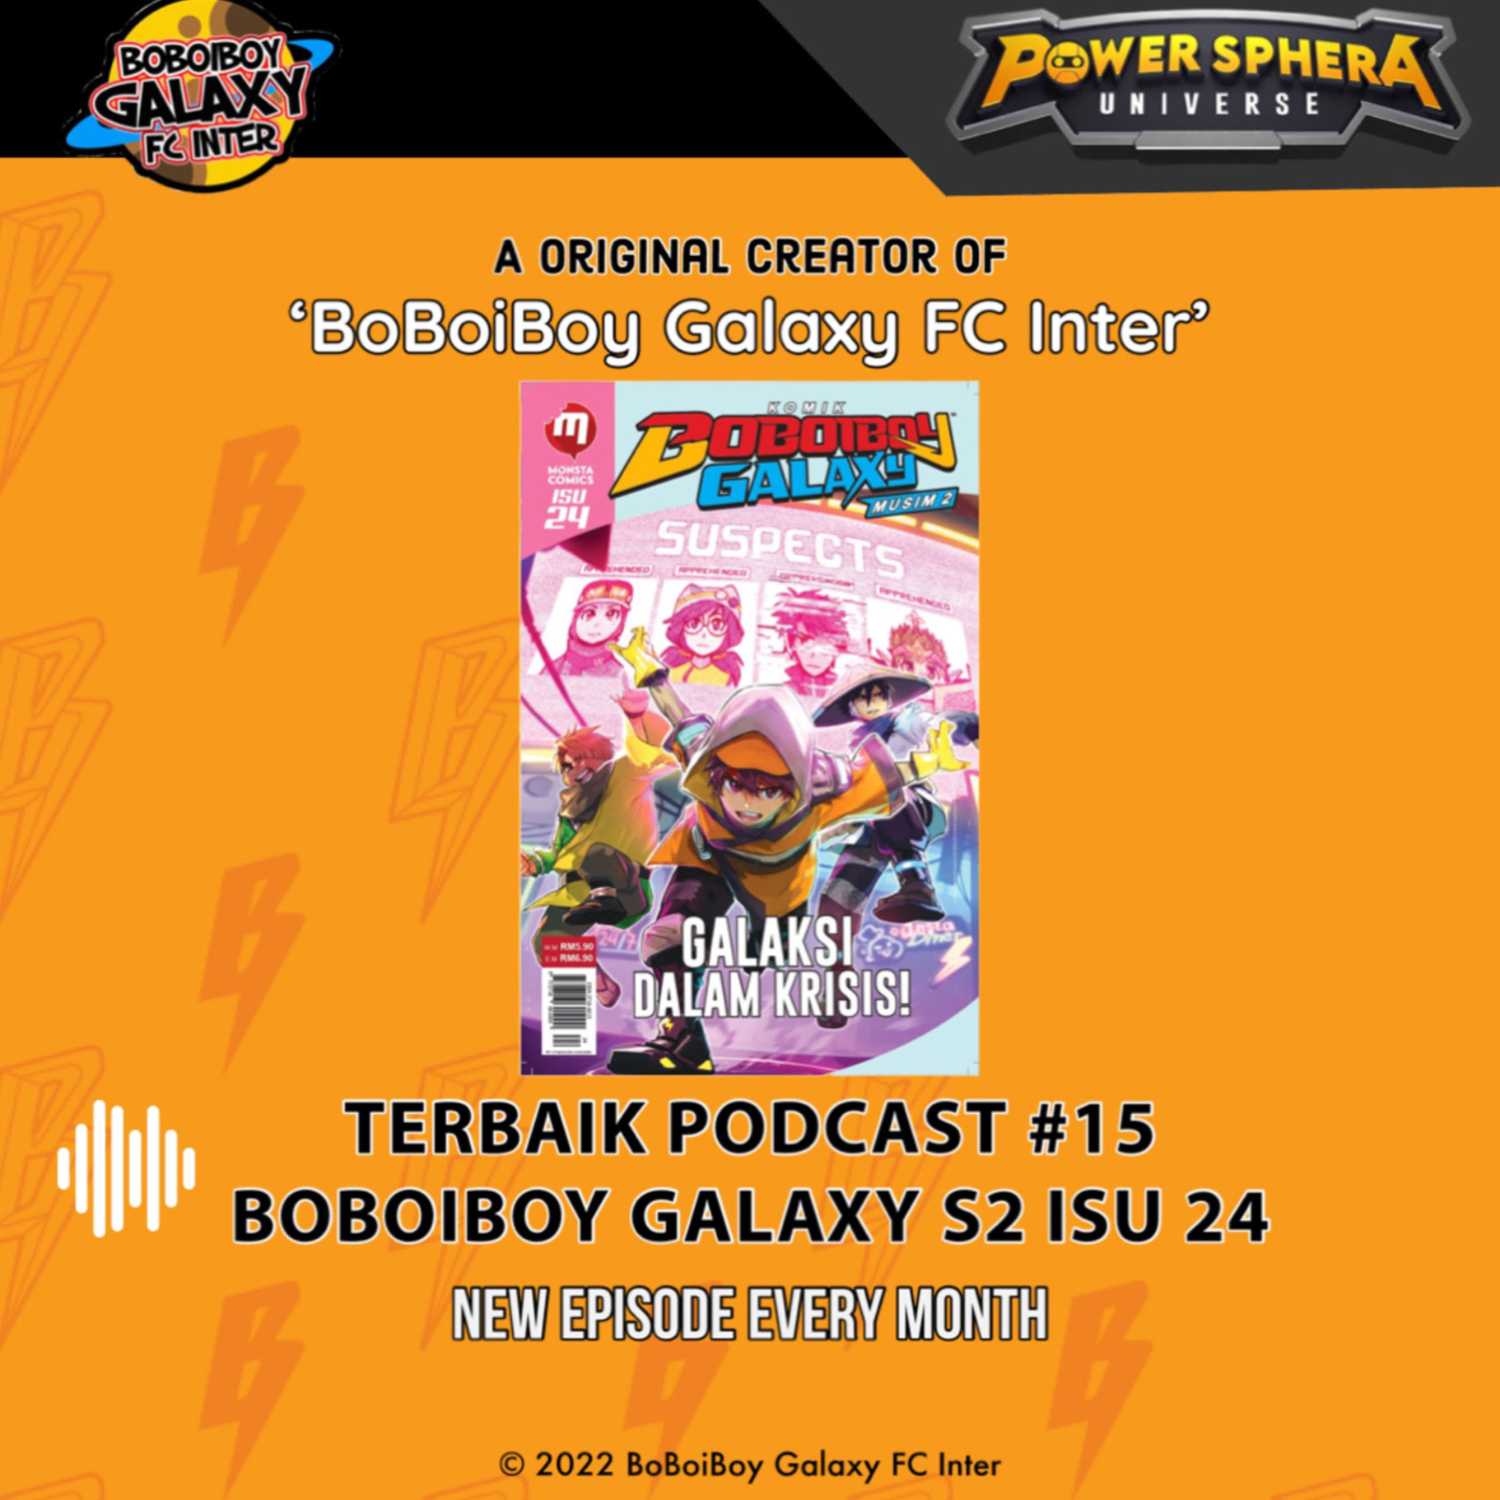 Terbaik Podcast #15 - BoBoiBoy Galaxy Season 2 isu 24 Spoiler